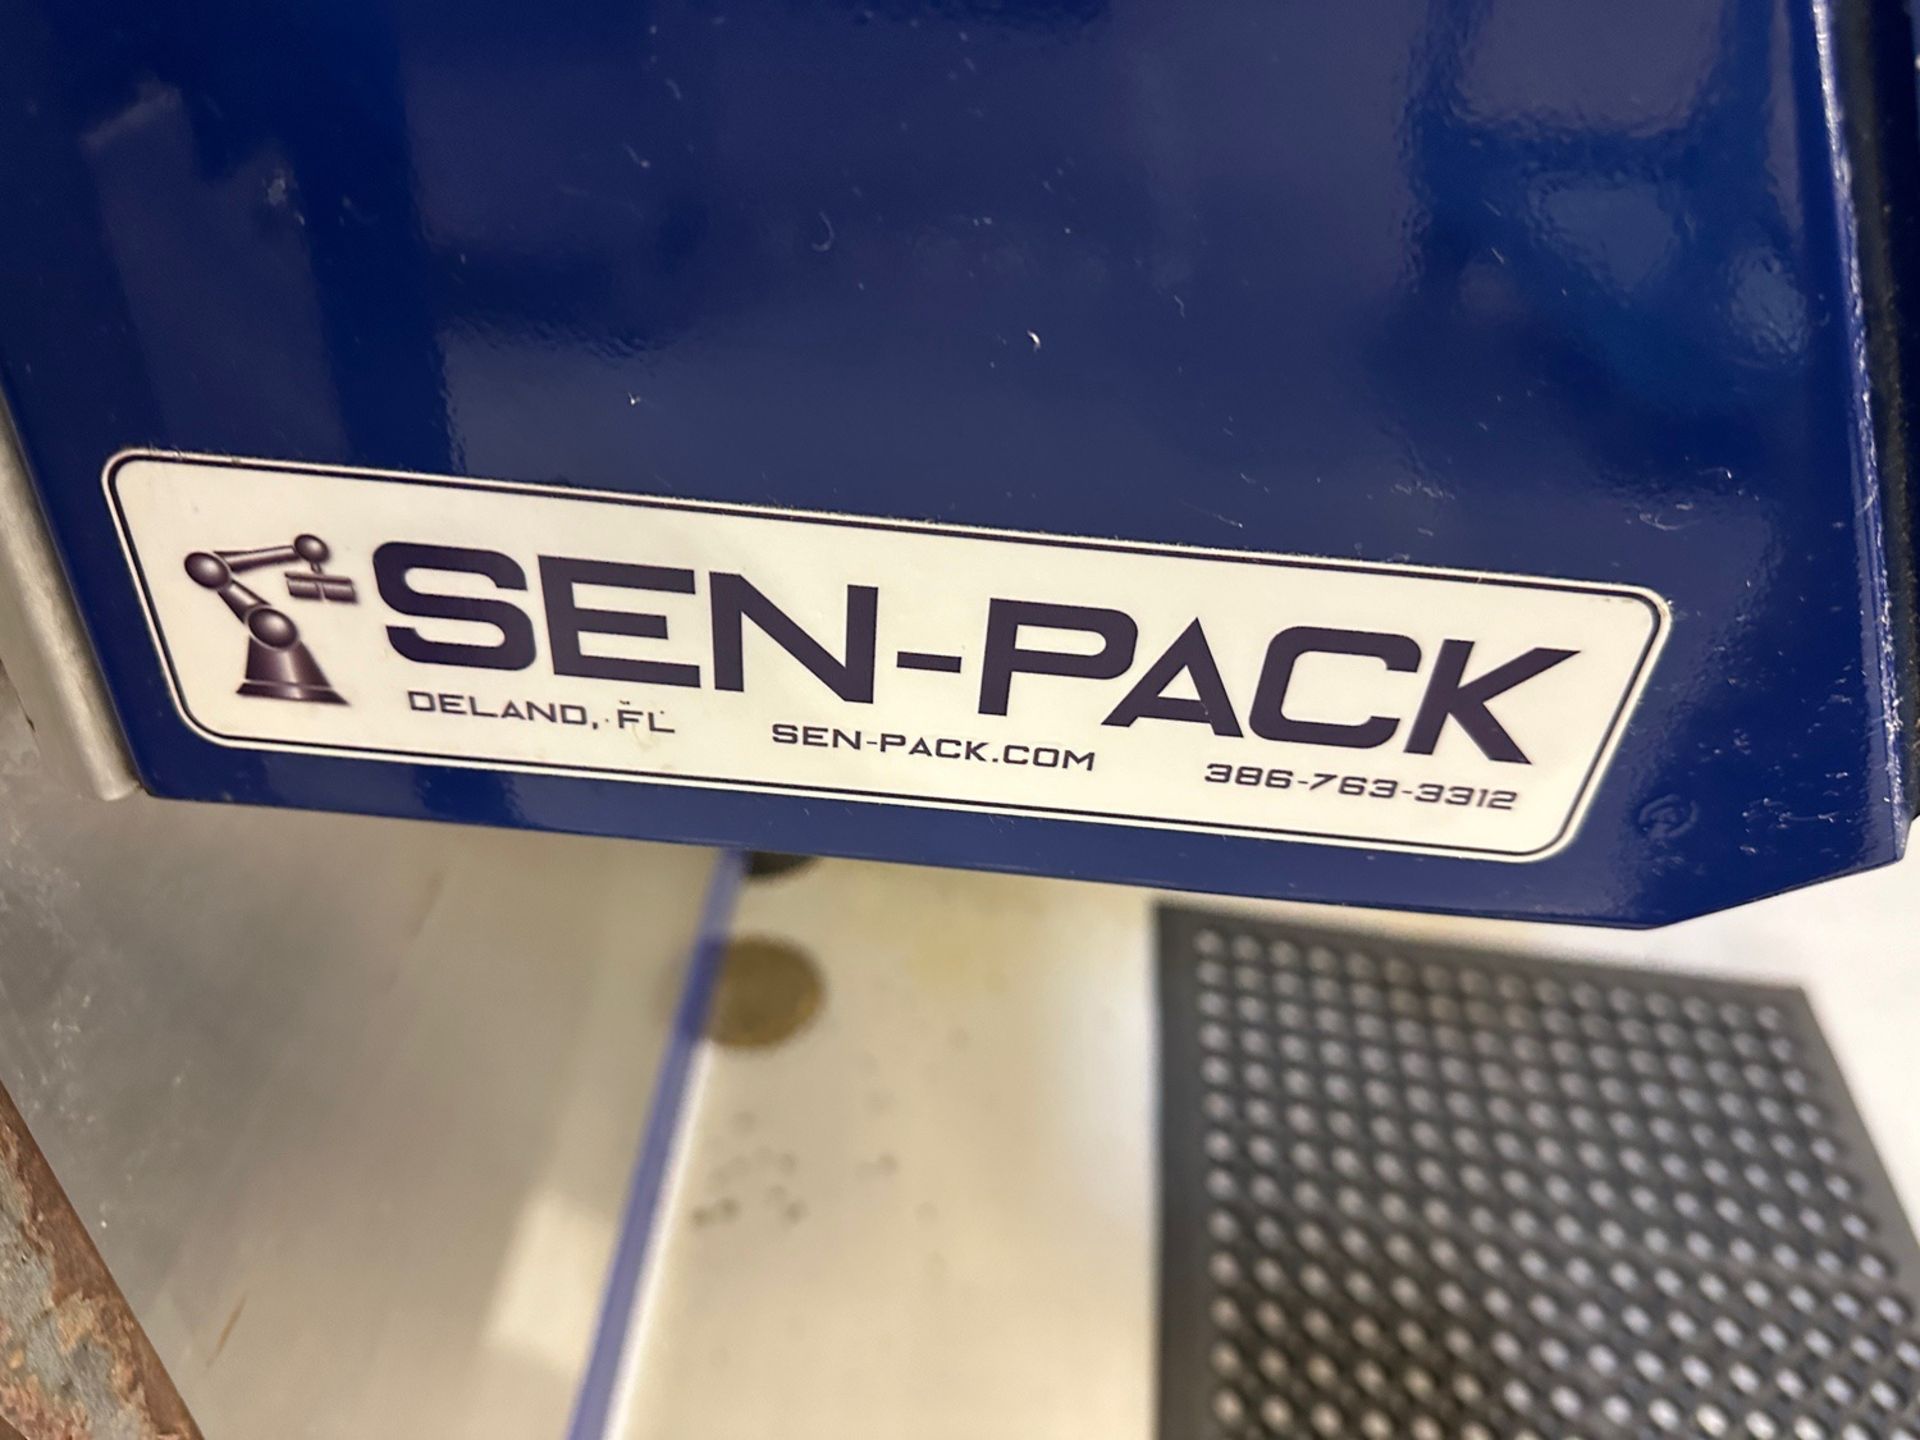 Sen-Pack Model WA-30 Case Packer, 480V/3ph/60Hz, S/O: C24533 - Image 8 of 11